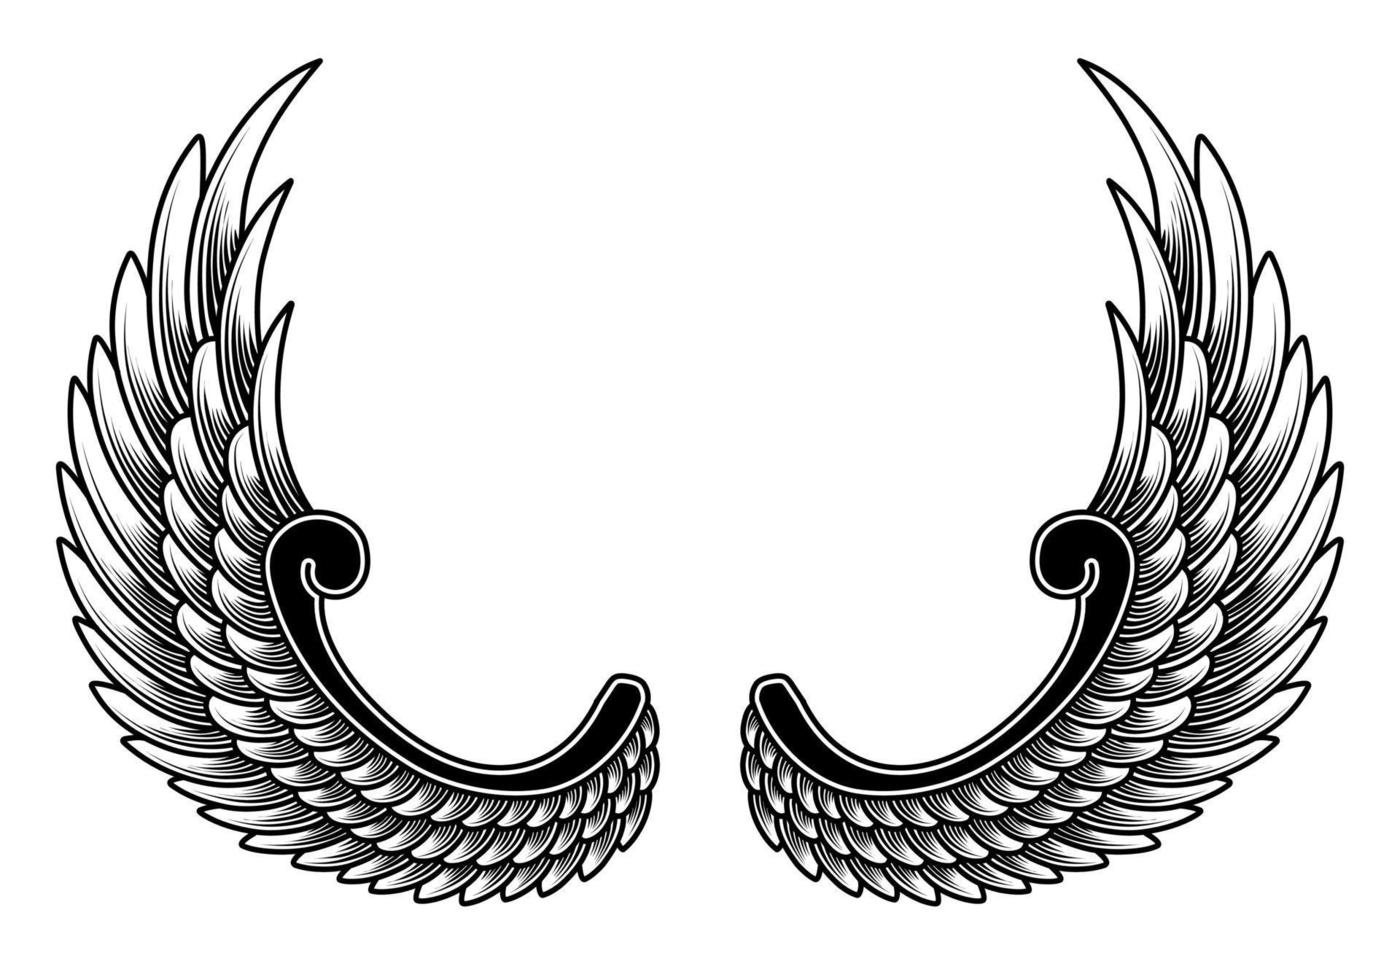 tatouage tribal d'ailes d'ange de vecteur